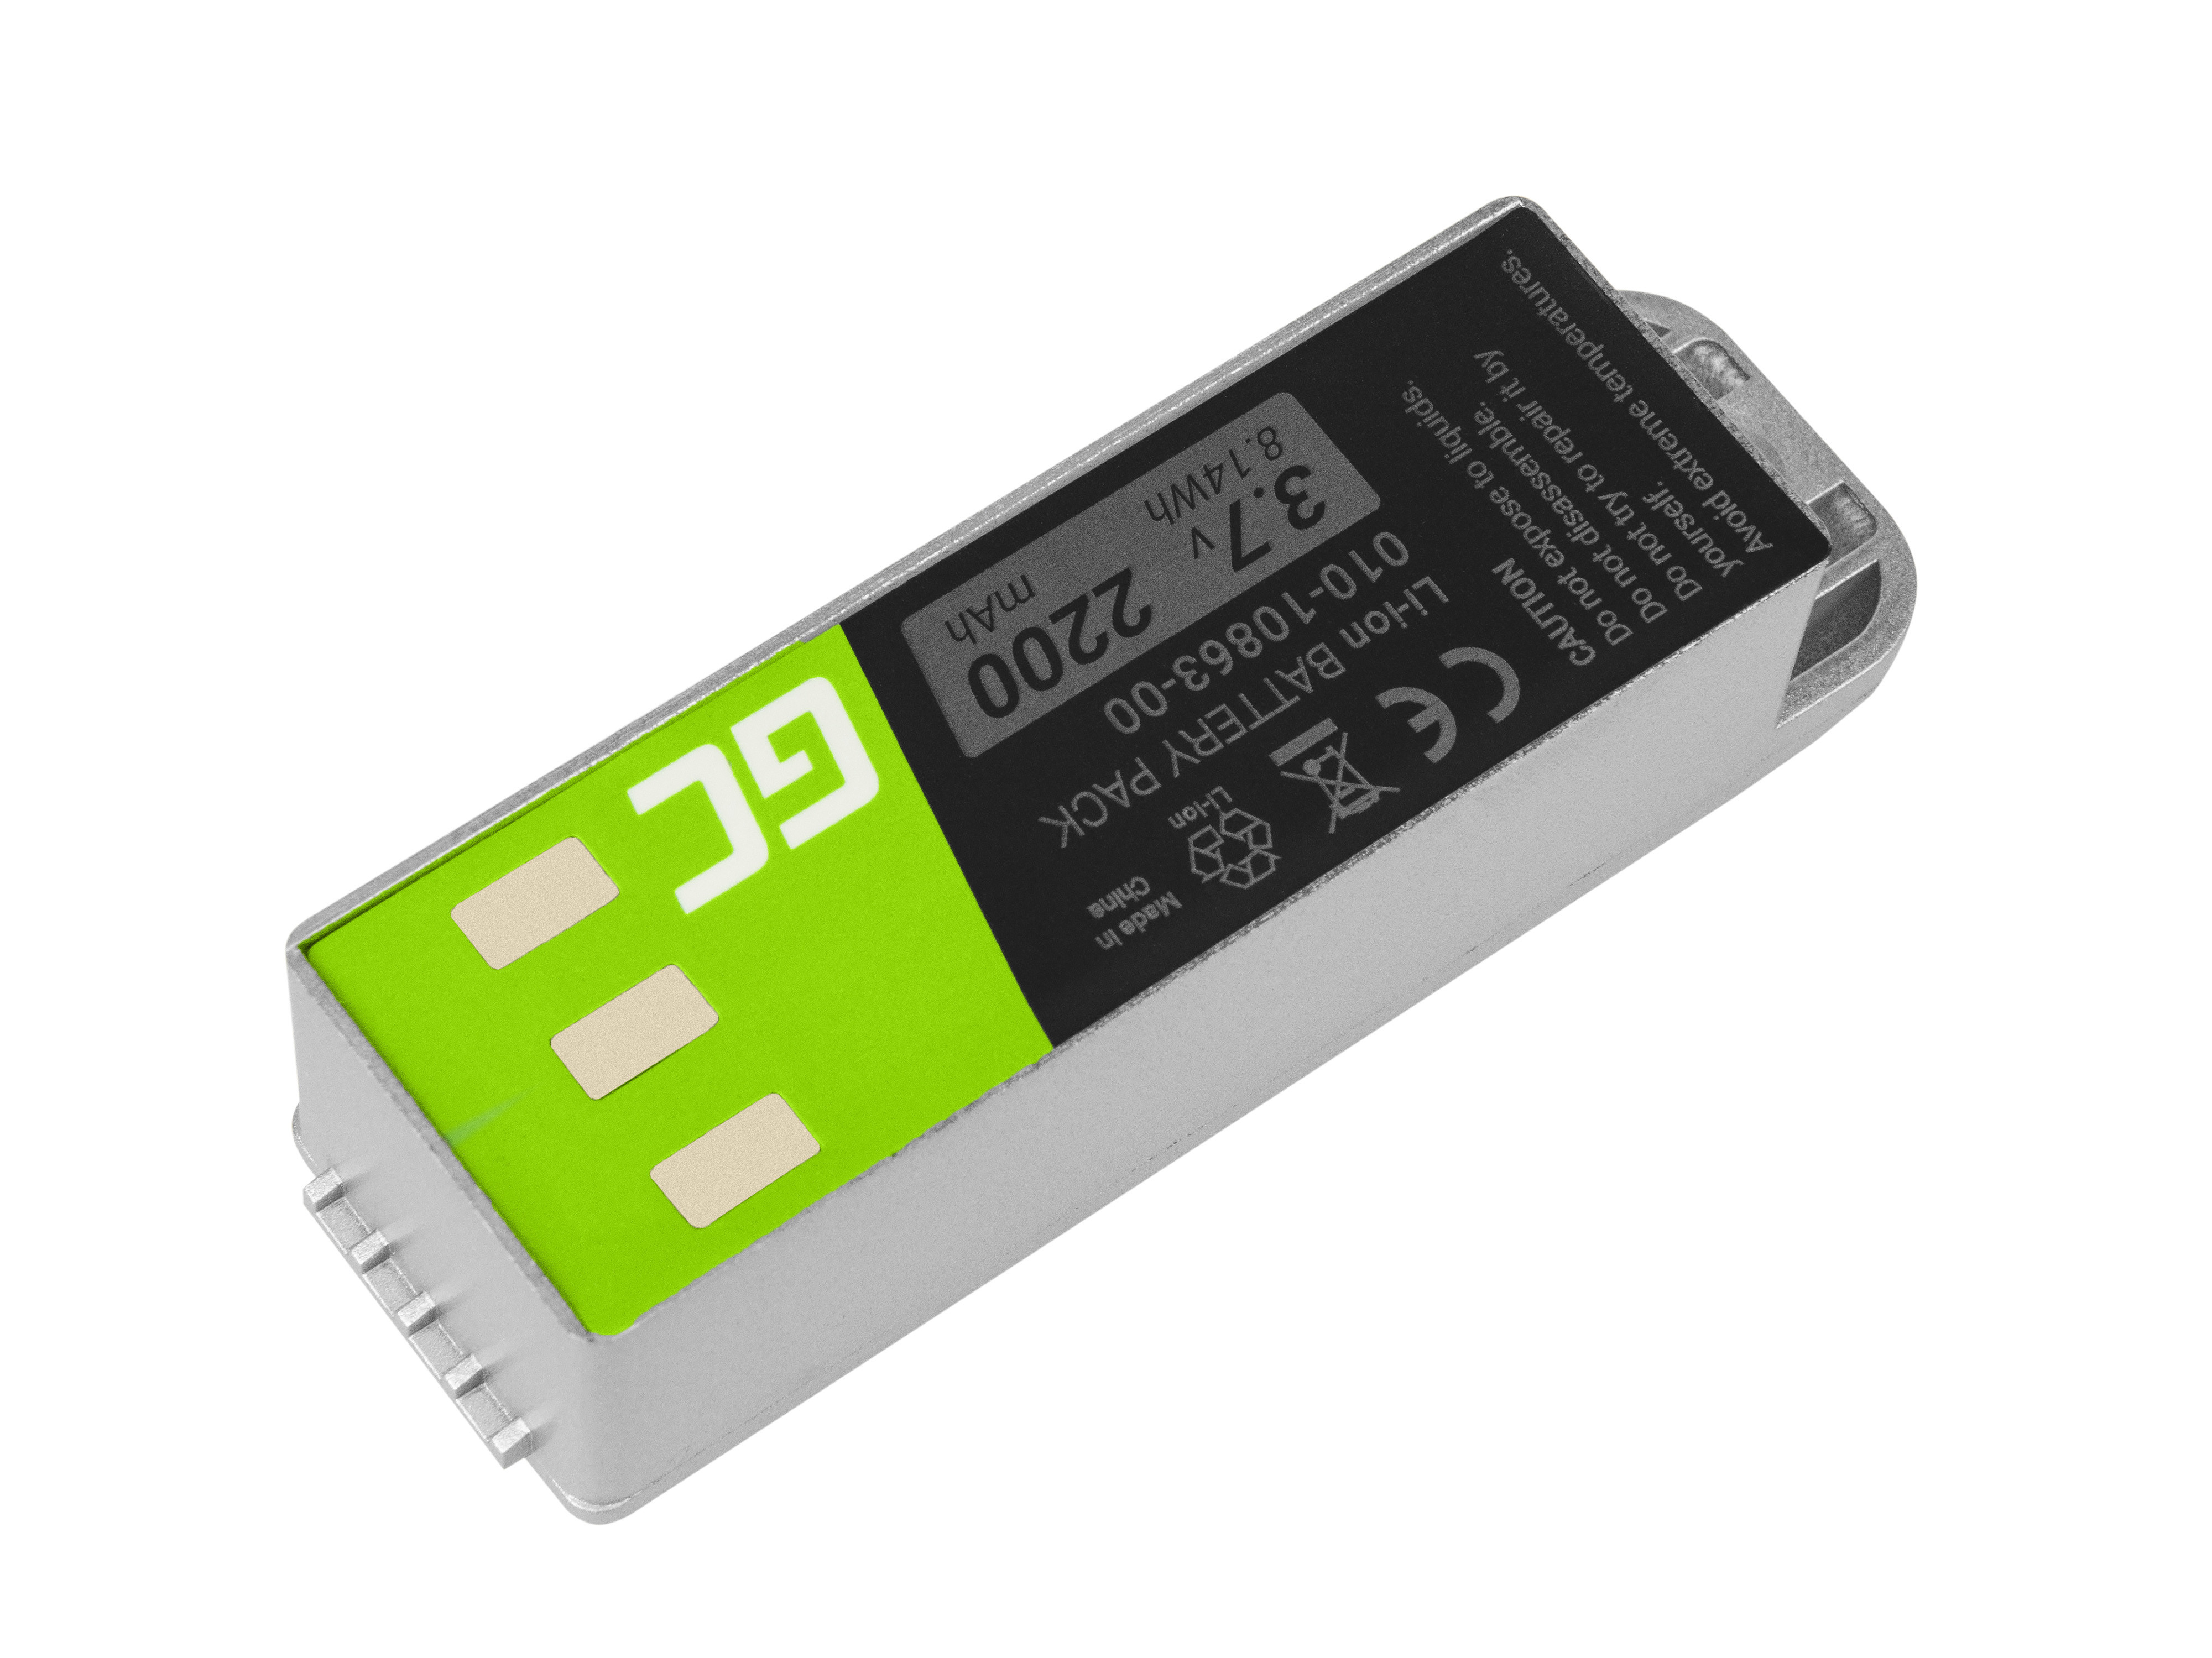 EOL-Green Cell GPS Battery 010-10863-00 Garmin Zumo 400 450 500 Deluxe